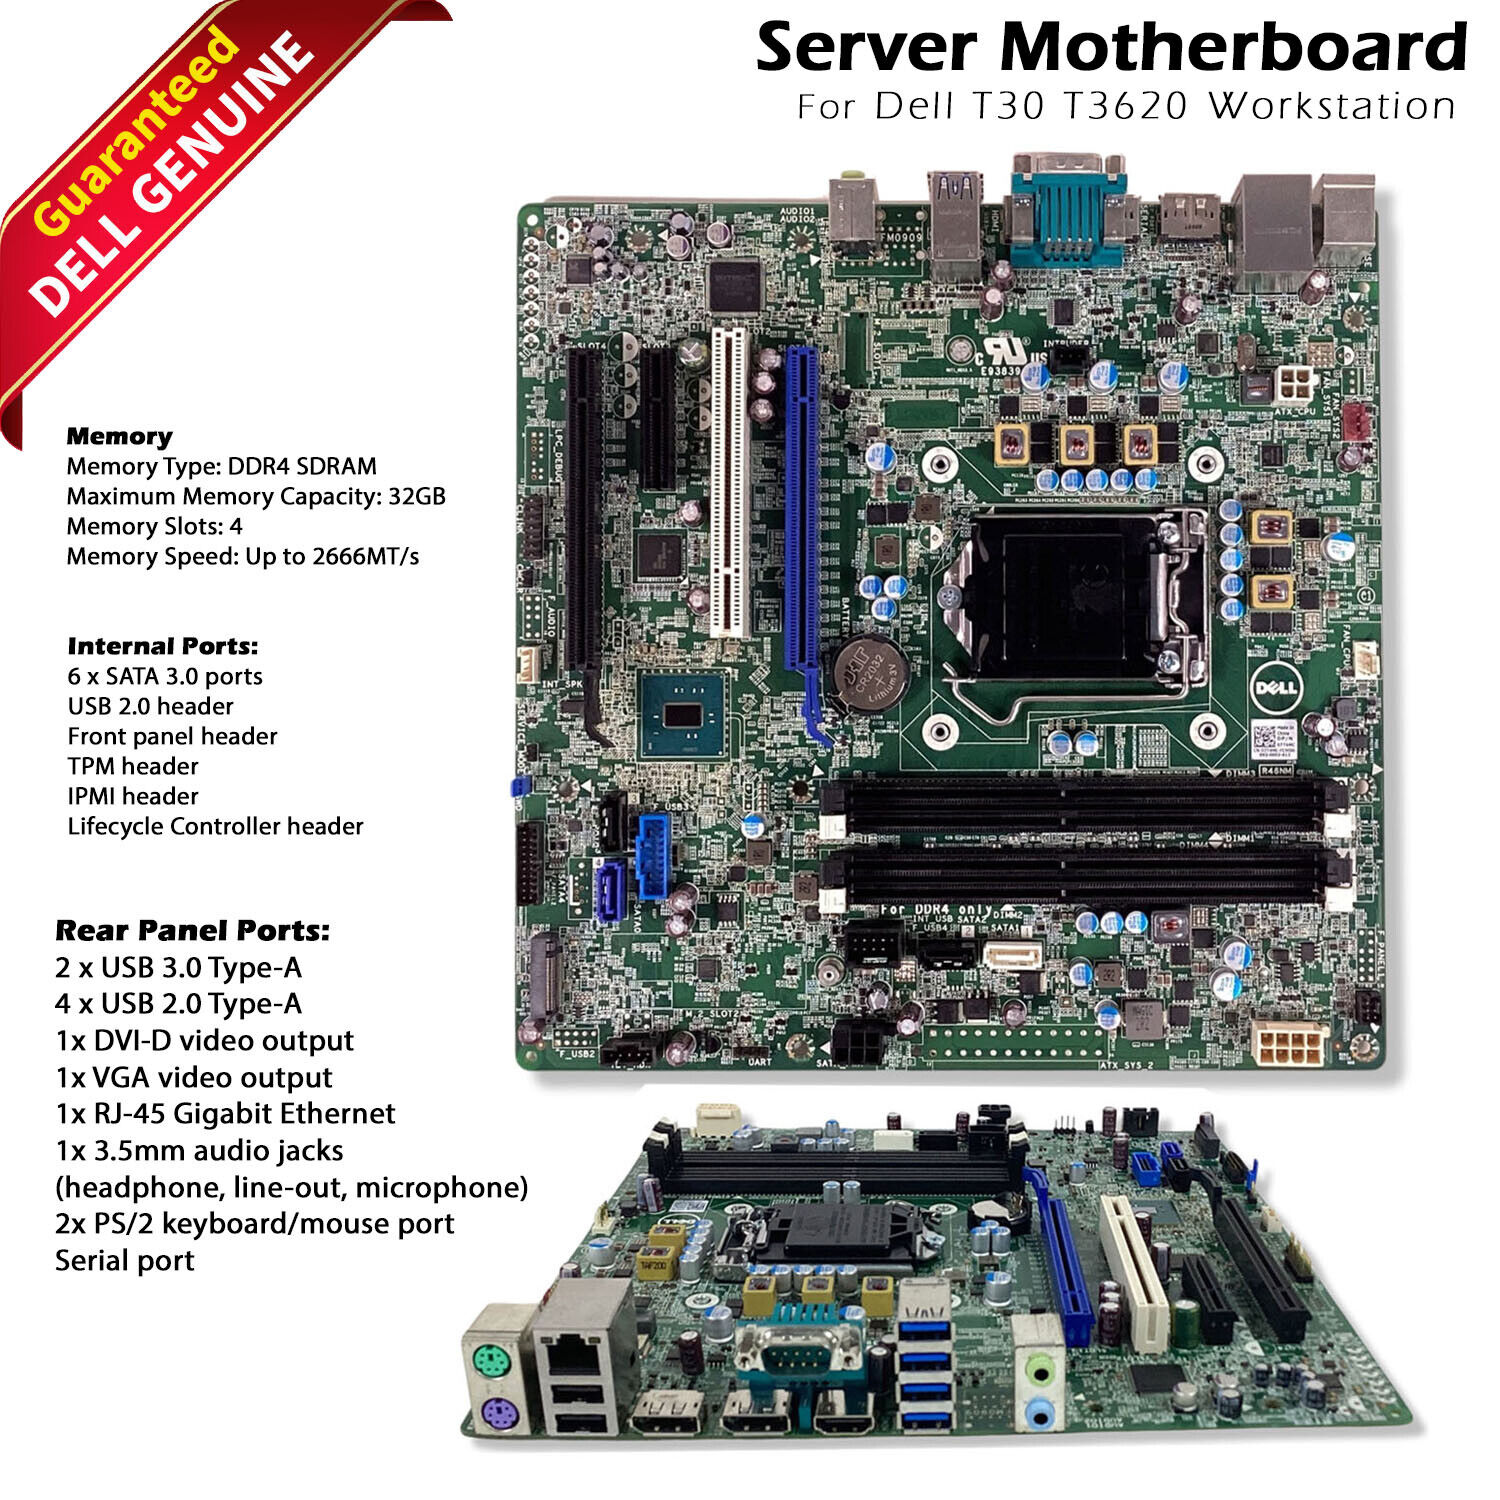 Dell PowerEdge T30 Mini Tower Intel LGA 1151 Ddr4 SDRAM Server Motherboard 7T4MC